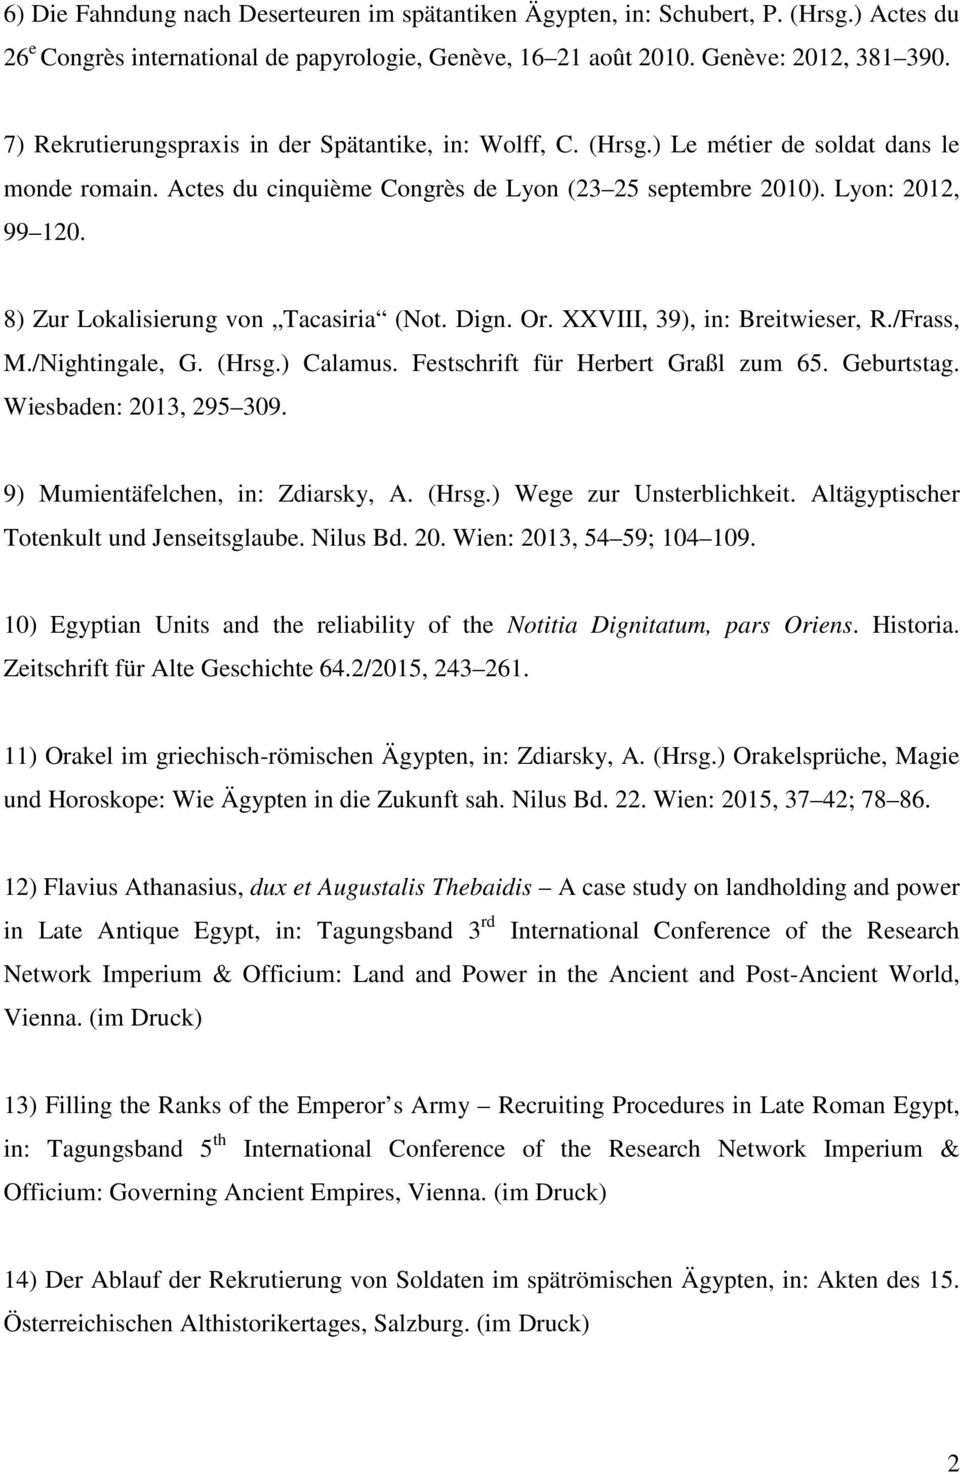 8) Zur Lokalisierung von Tacasiria (Not. Dign. Or. XXVIII, 39), in: Breitwieser, R./Frass, M./Nightingale, G. (Hrsg.) Calamus. Festschrift für Herbert Graßl zum 65. Geburtstag.